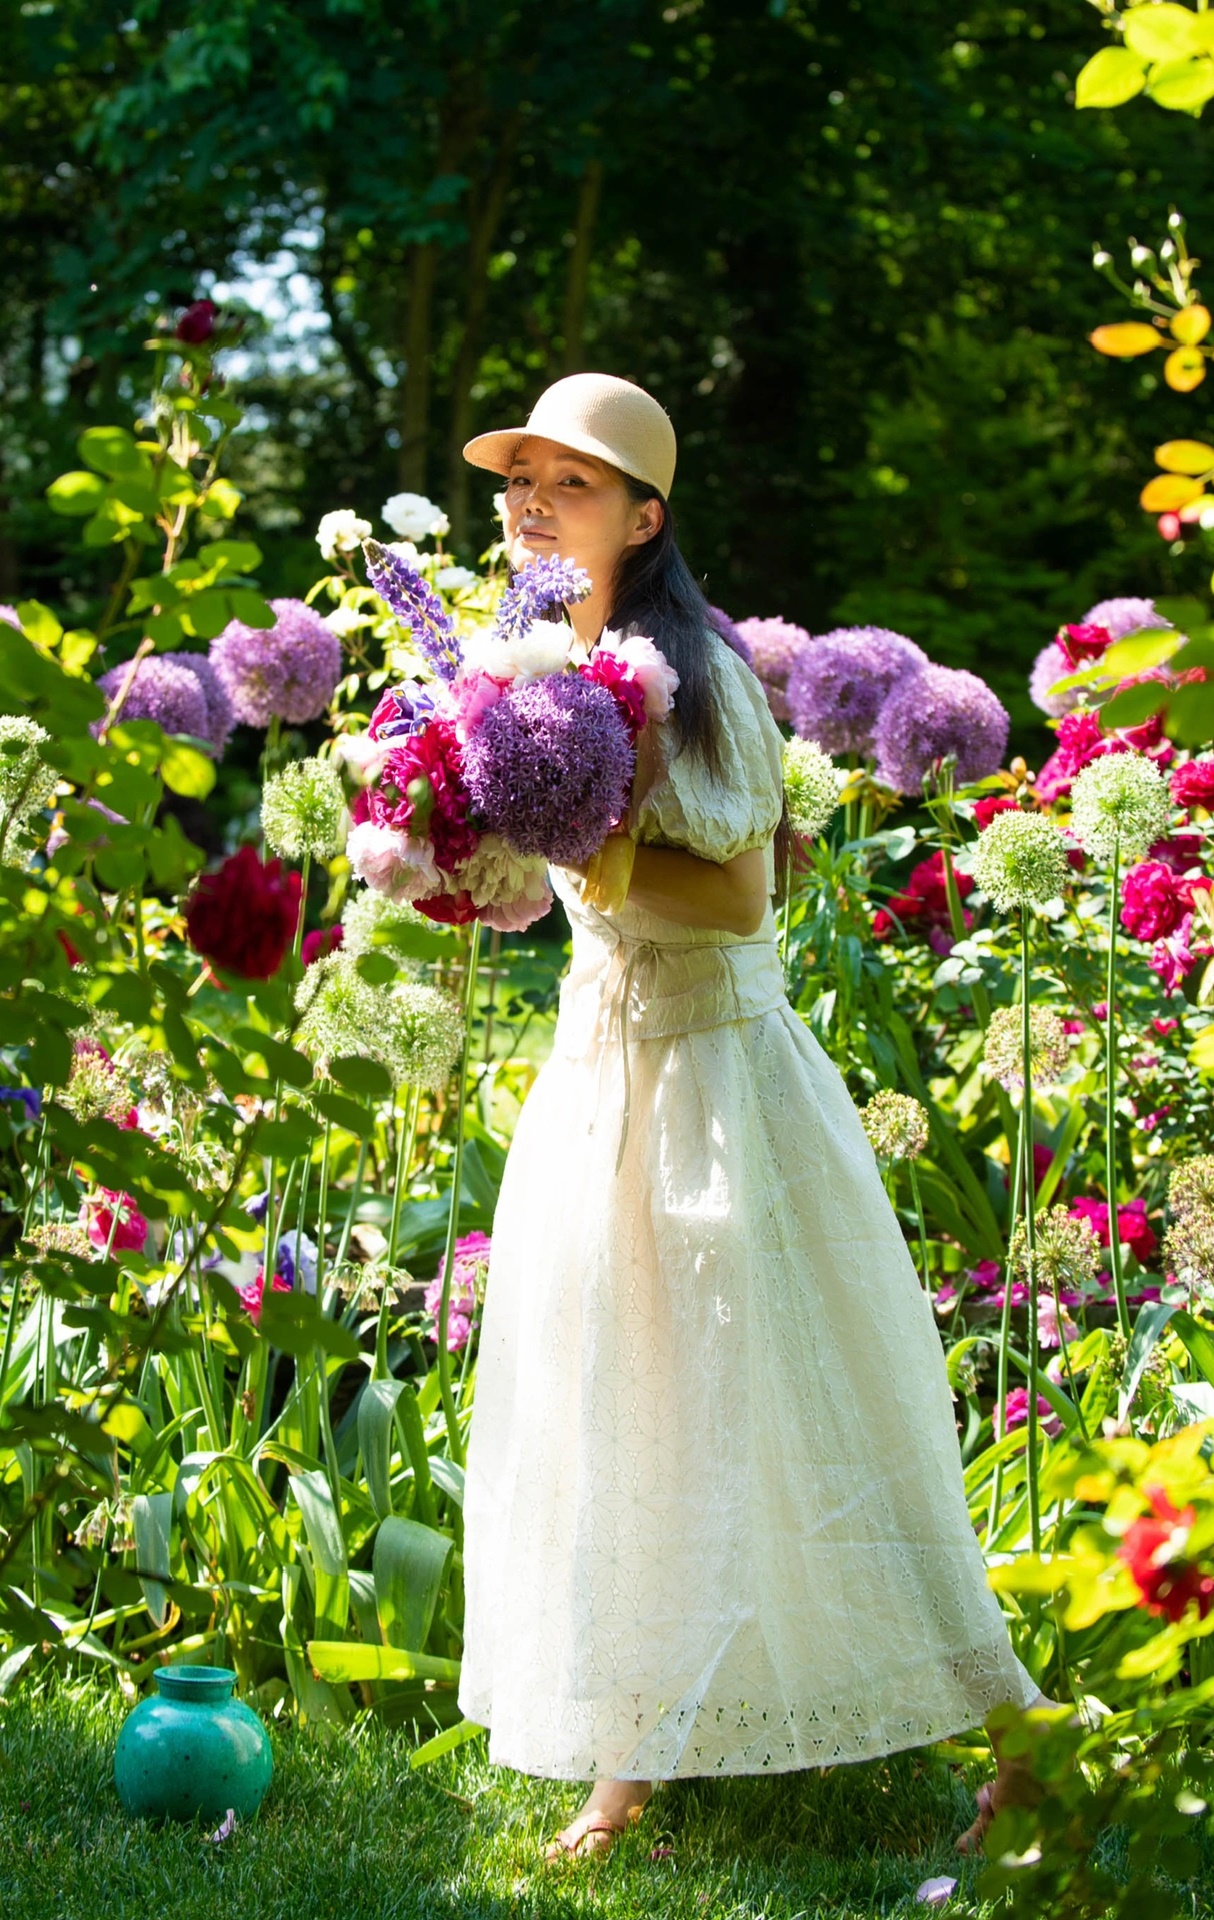 Khu vườn đẹp như cổ tích ở Mỹ, chủ nhân được dân mạng gọi là “nàng tiên hoa”